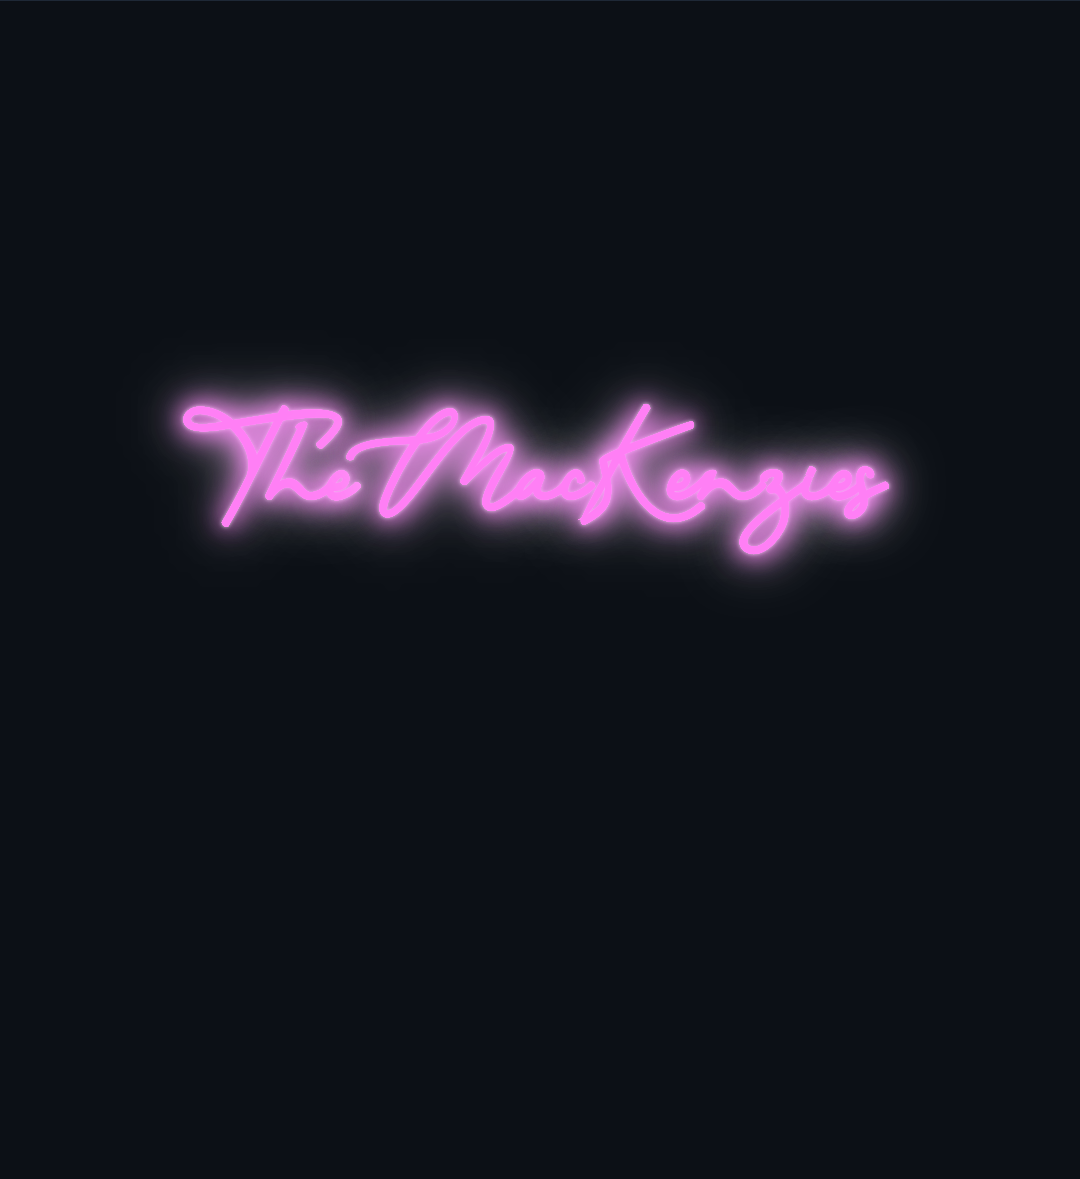 Custom neon sign - The MacKenzies